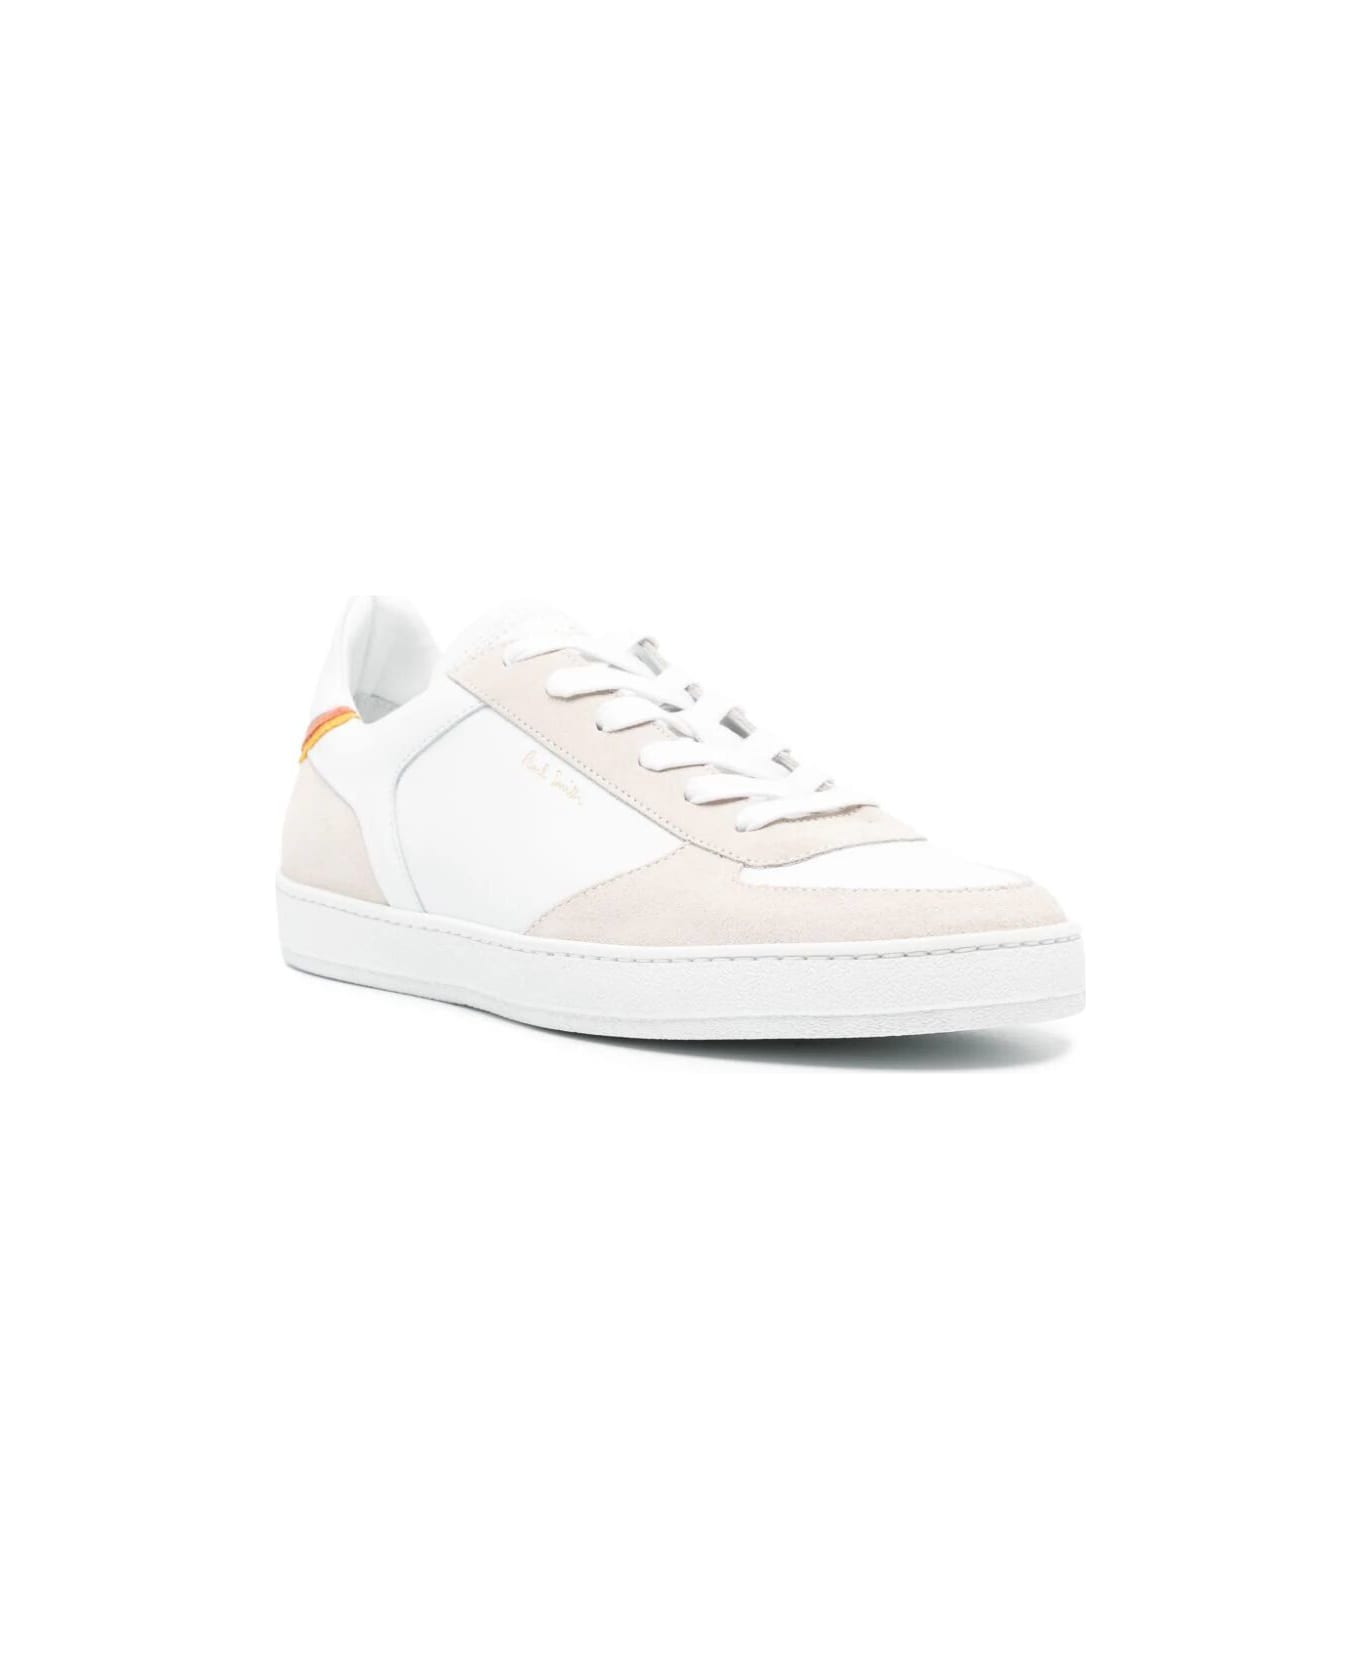 Paul Smith Mens Shoe Destry White - Whites スニーカー